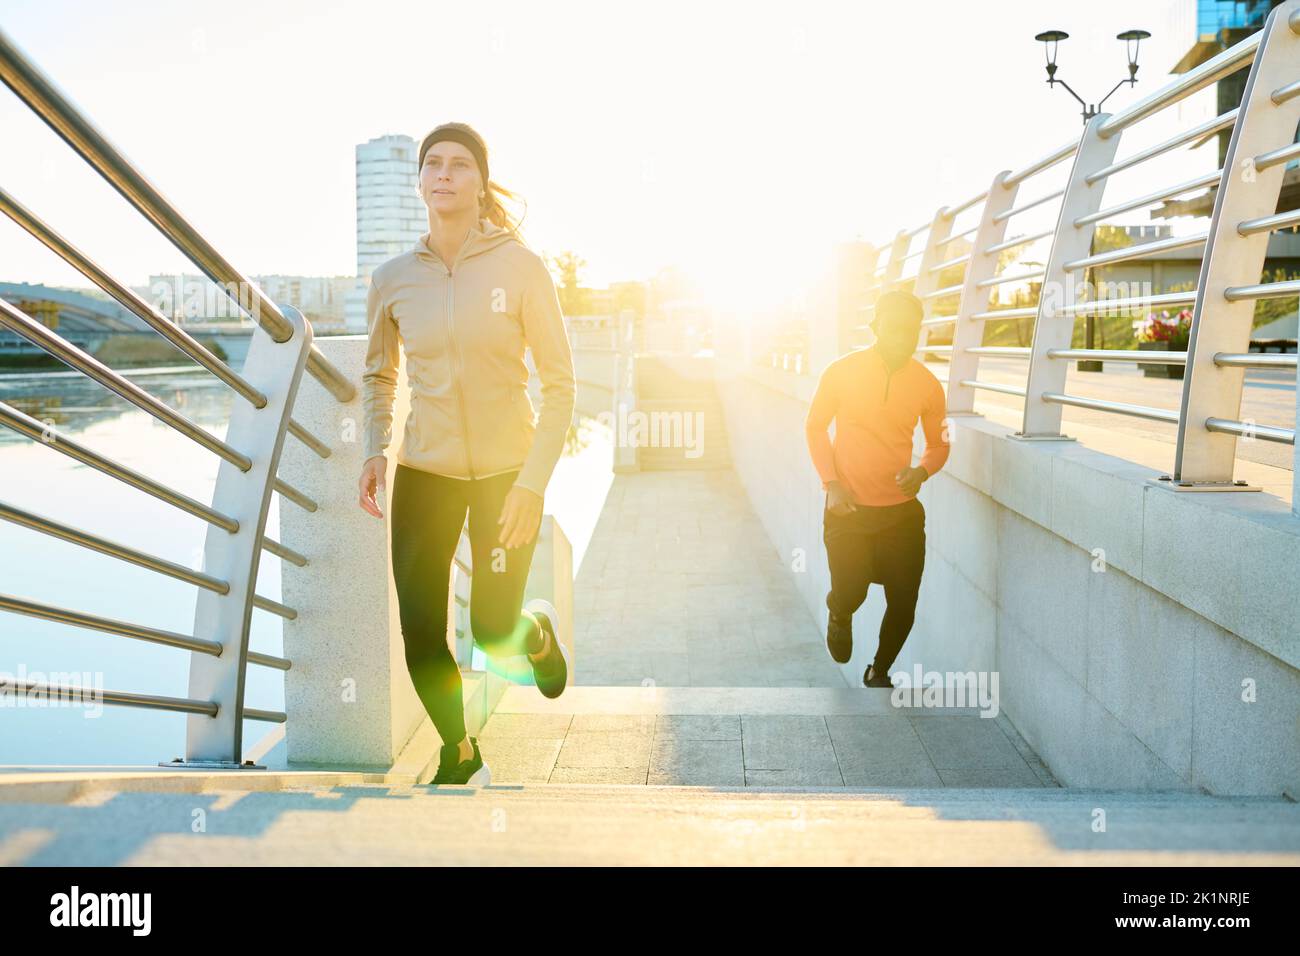 Vue de face de la jeune sportswoman qui court le long d'un pont moderne avec un homme afro-américain en arrière-plan Banque D'Images